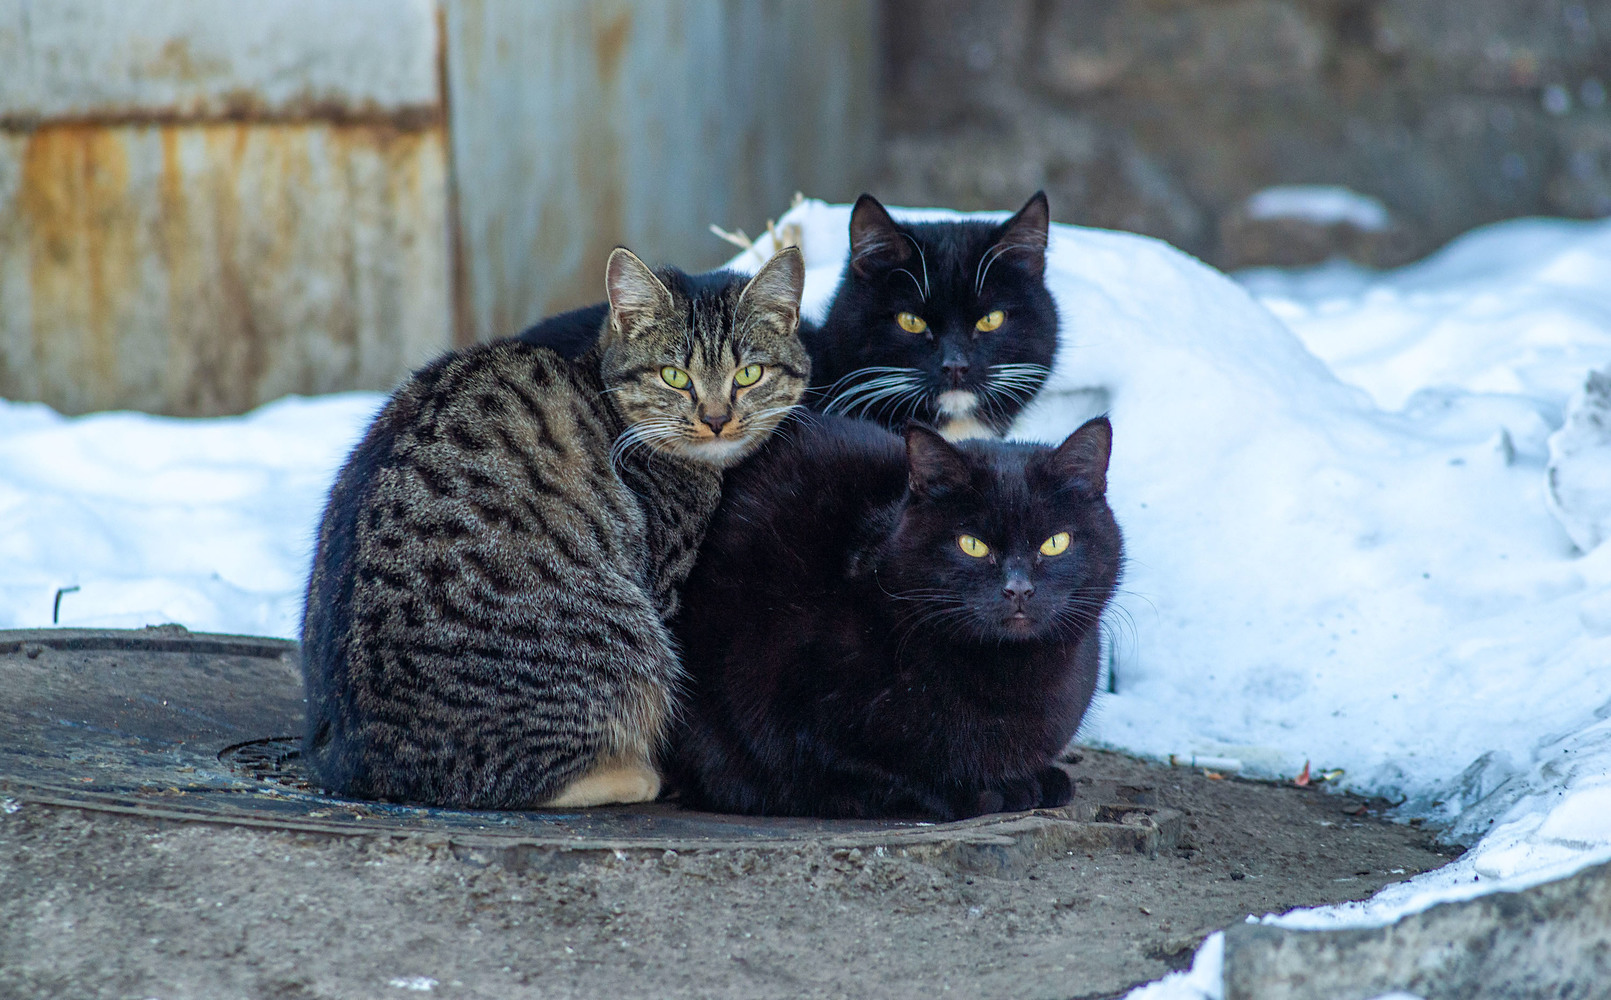 Сегодня в Челябинской области отмечают День кошек. Посмотрите эти фото и согрейтесь обаянием этих милых зверушек